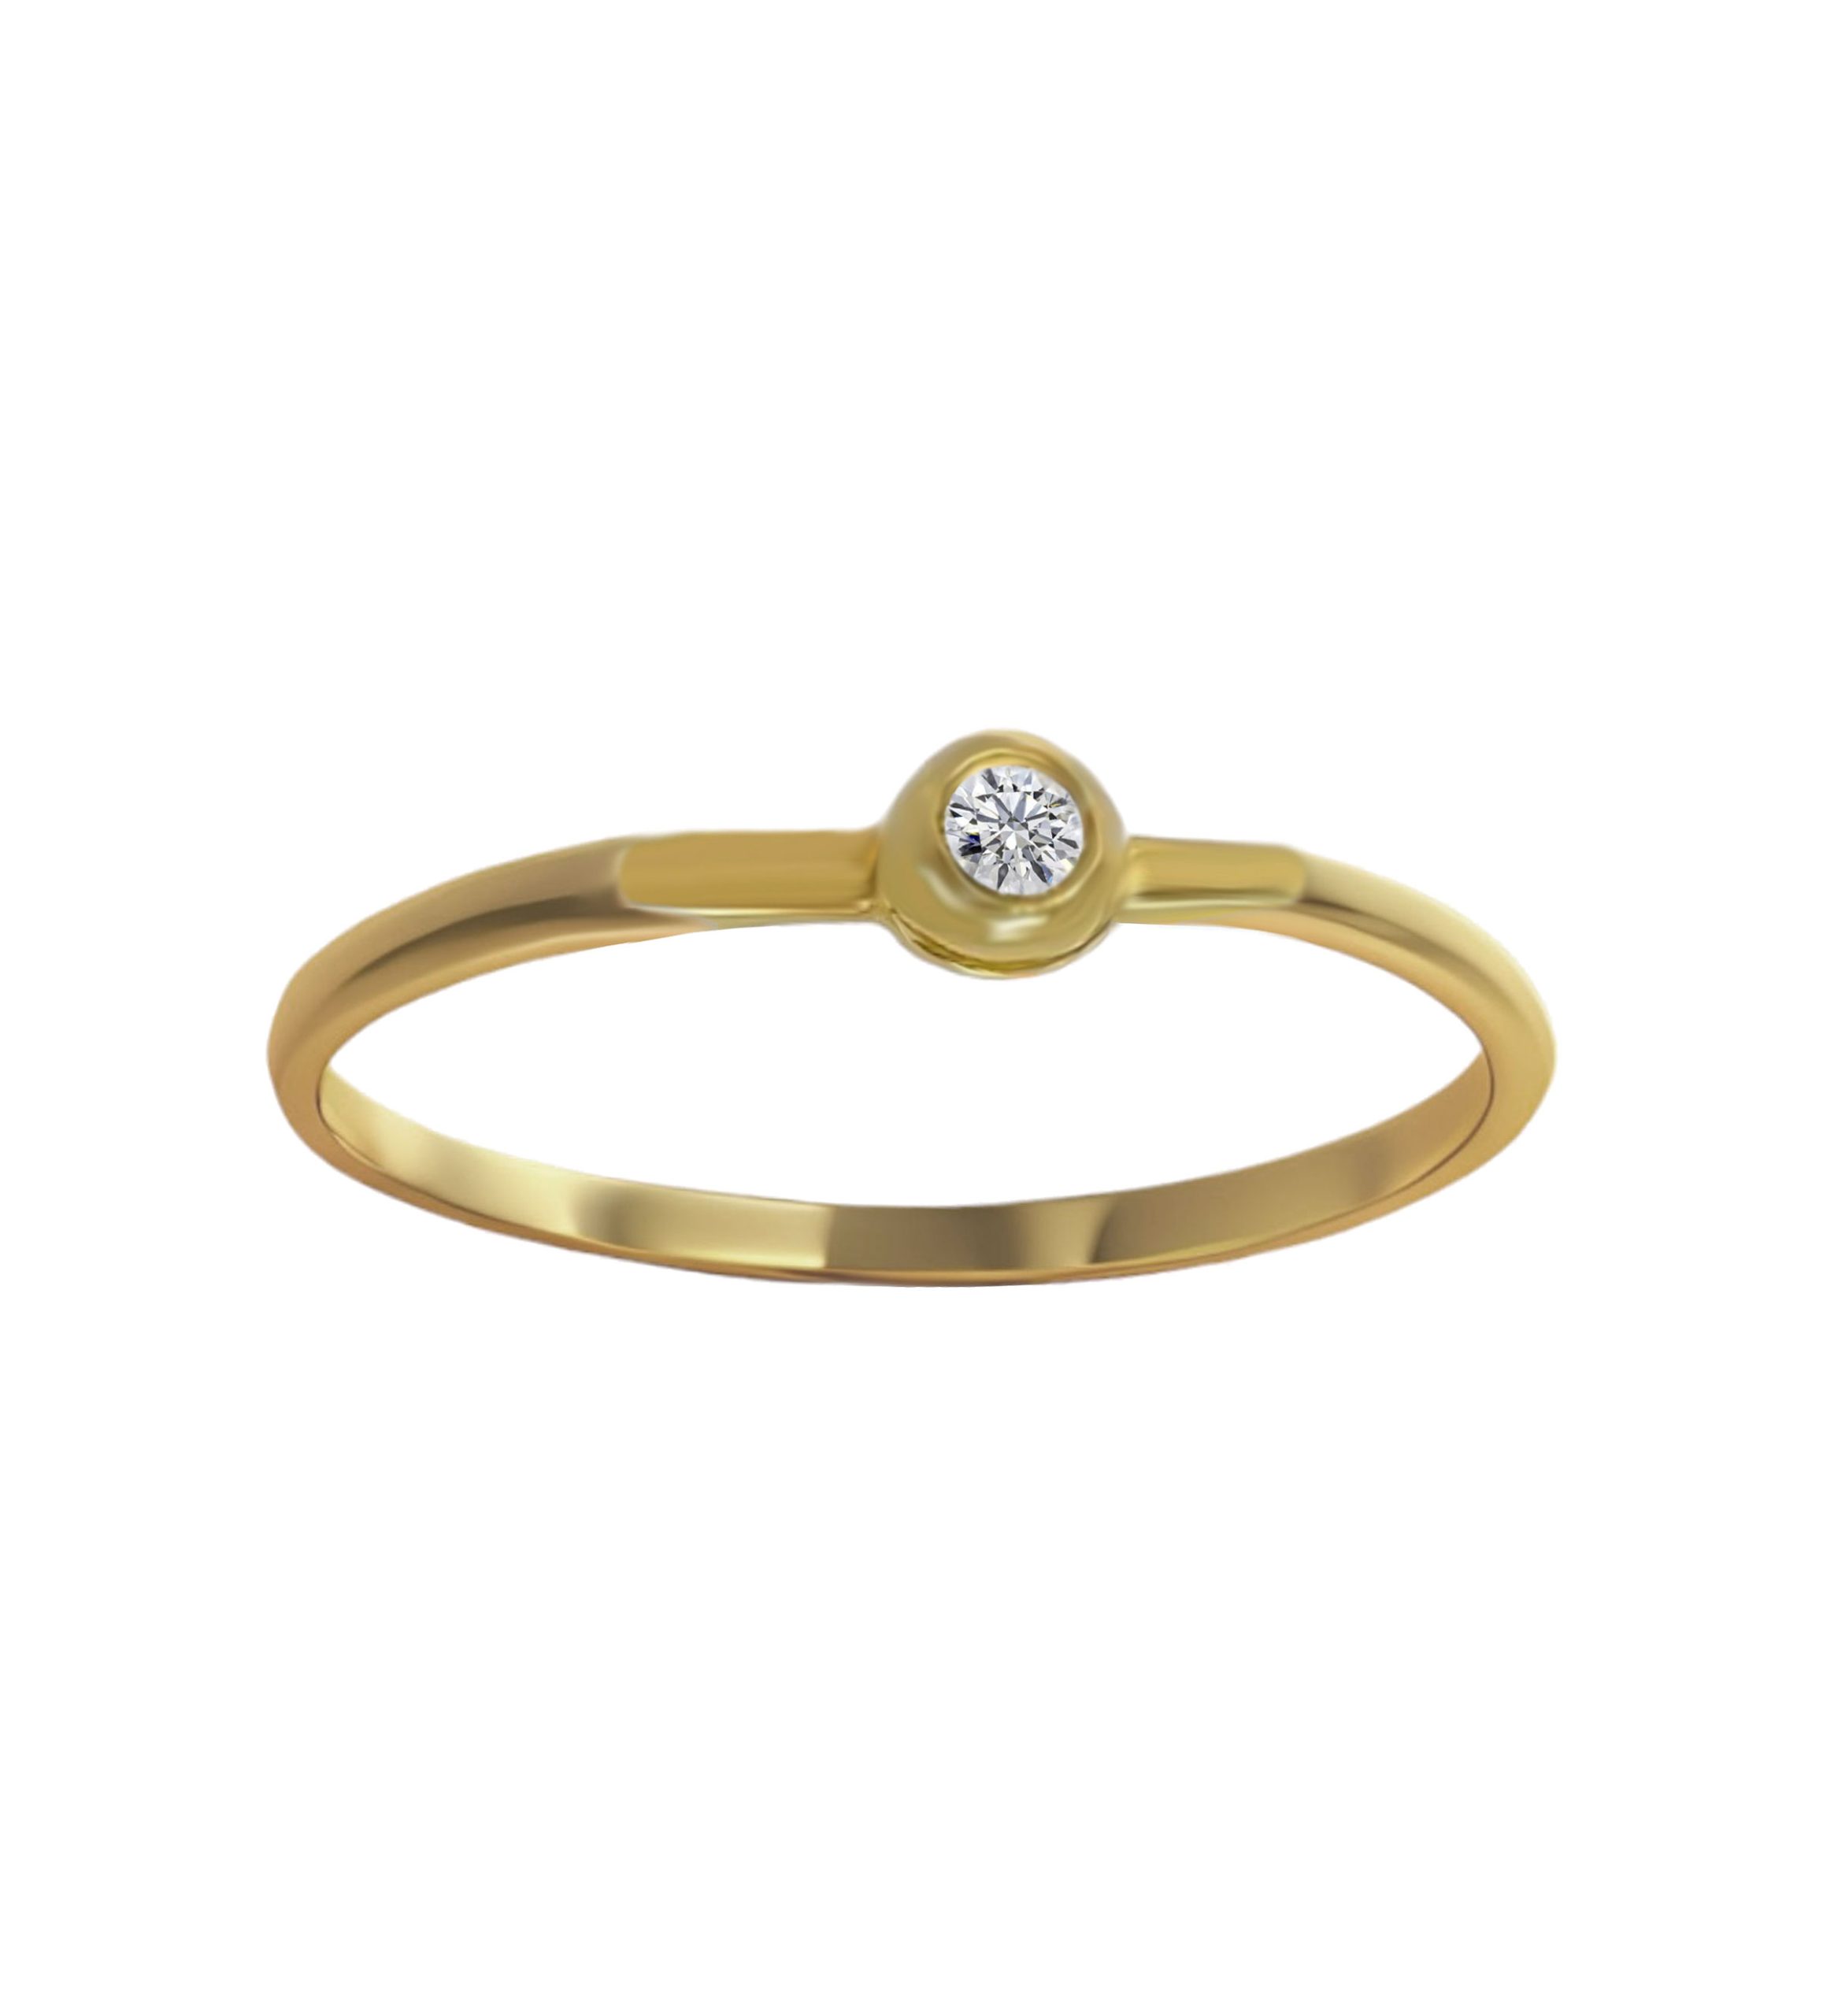 anillo compromiso oro amarillo 18k con diamante